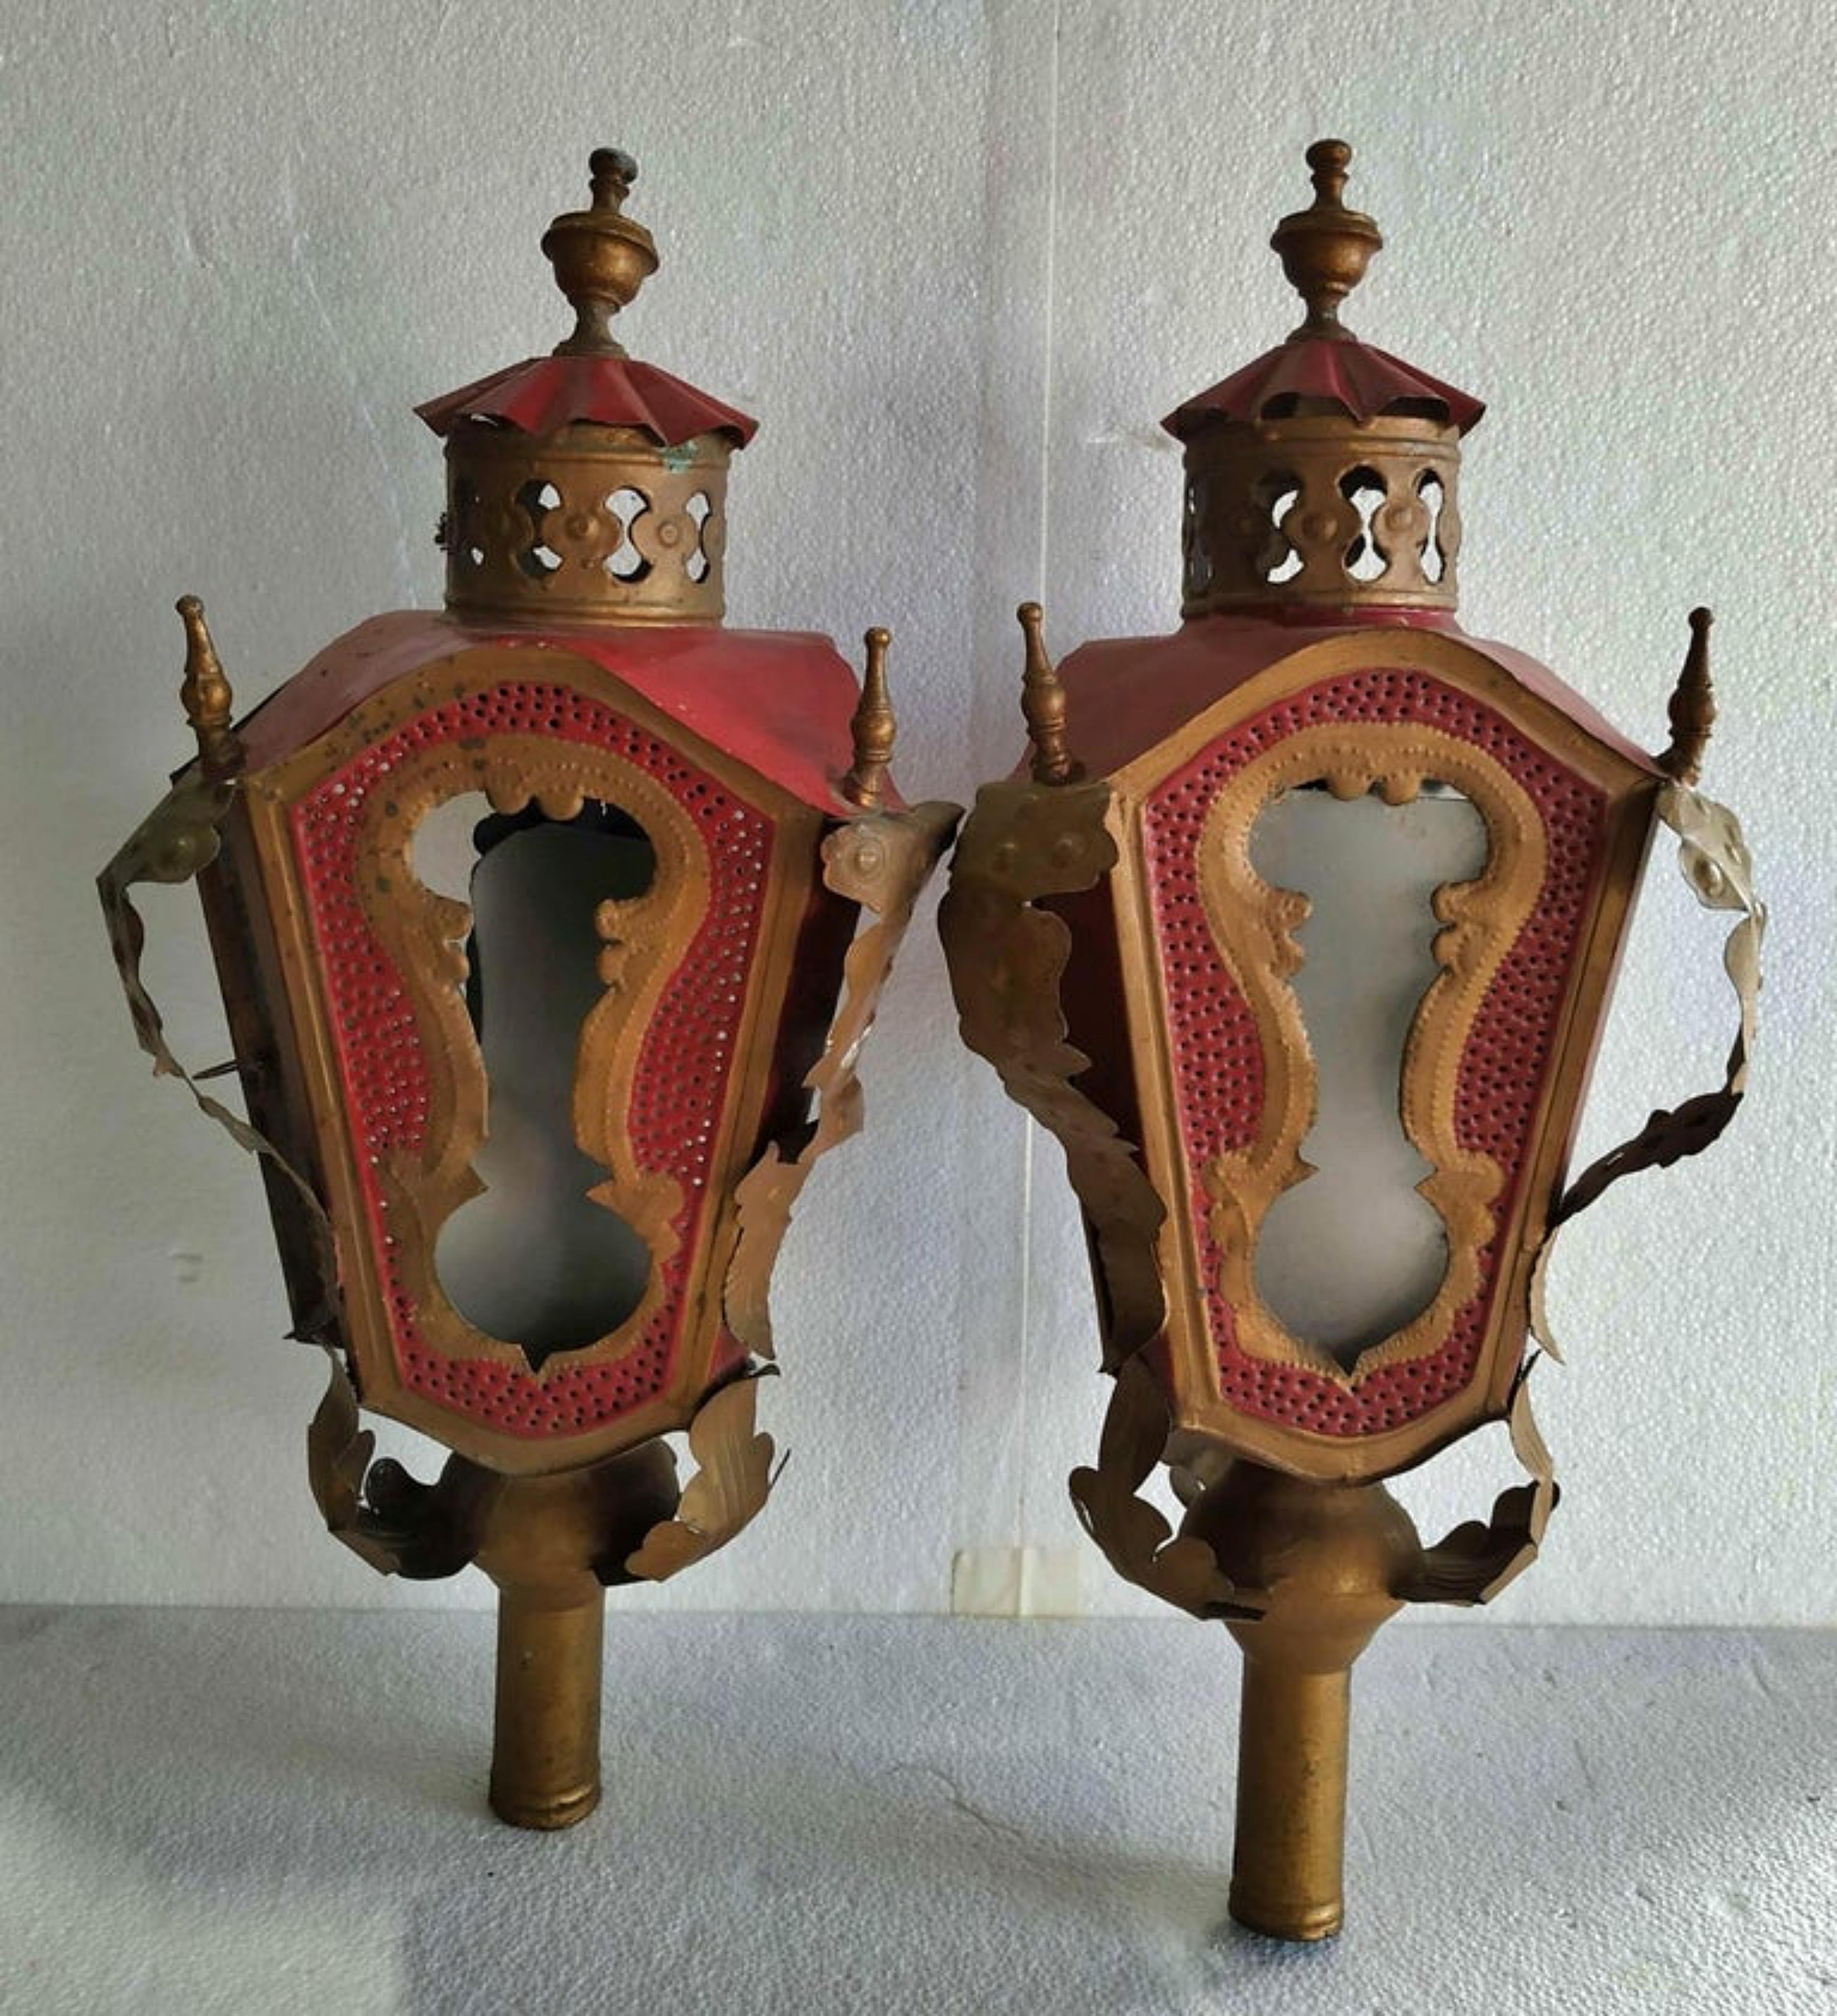 Paire de lanternes portugaises 18ème siècle

en métal peint et doré, côtés en verre.
Hauteur : 57 cm.
bonnes conditions